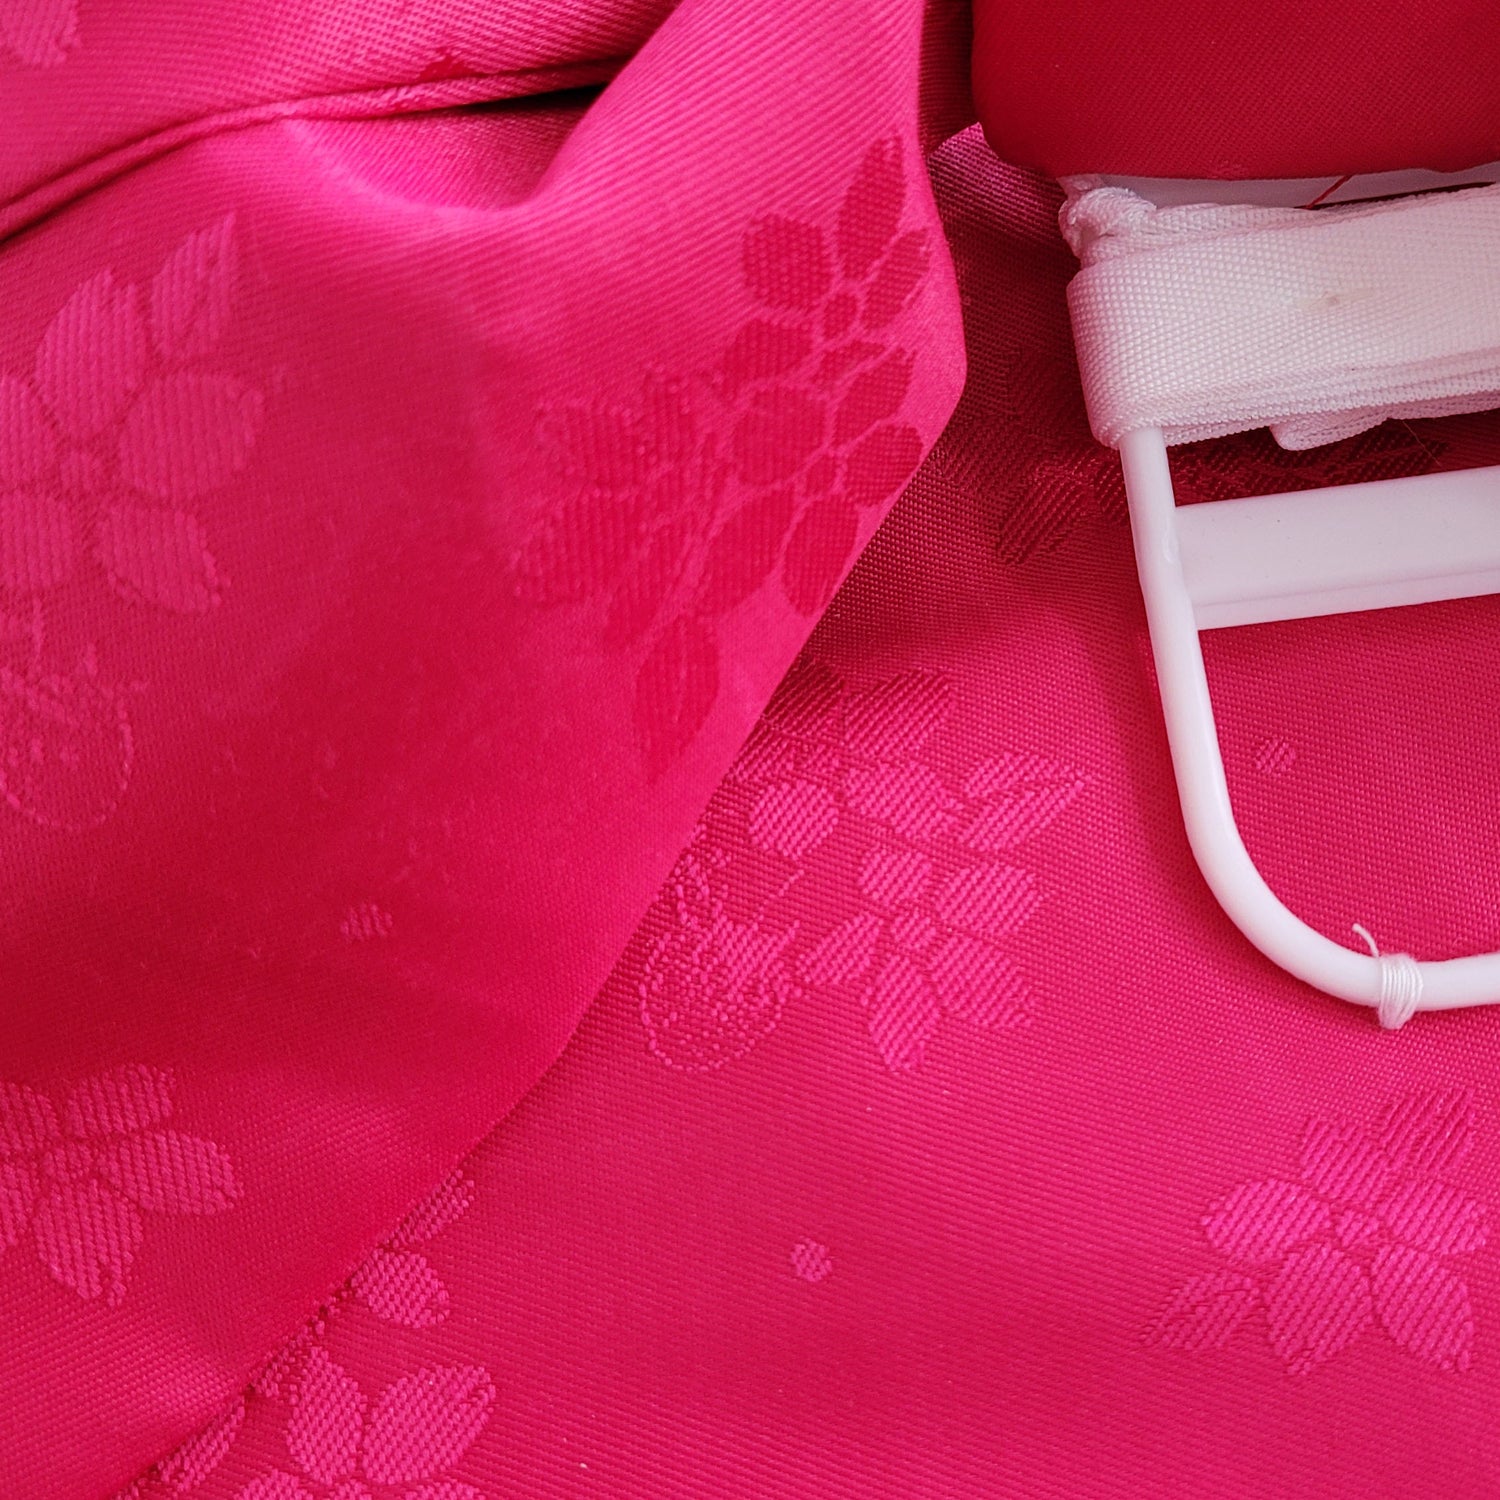 Japanese Pre-Tied Obi Belt - Hot Pink Floral